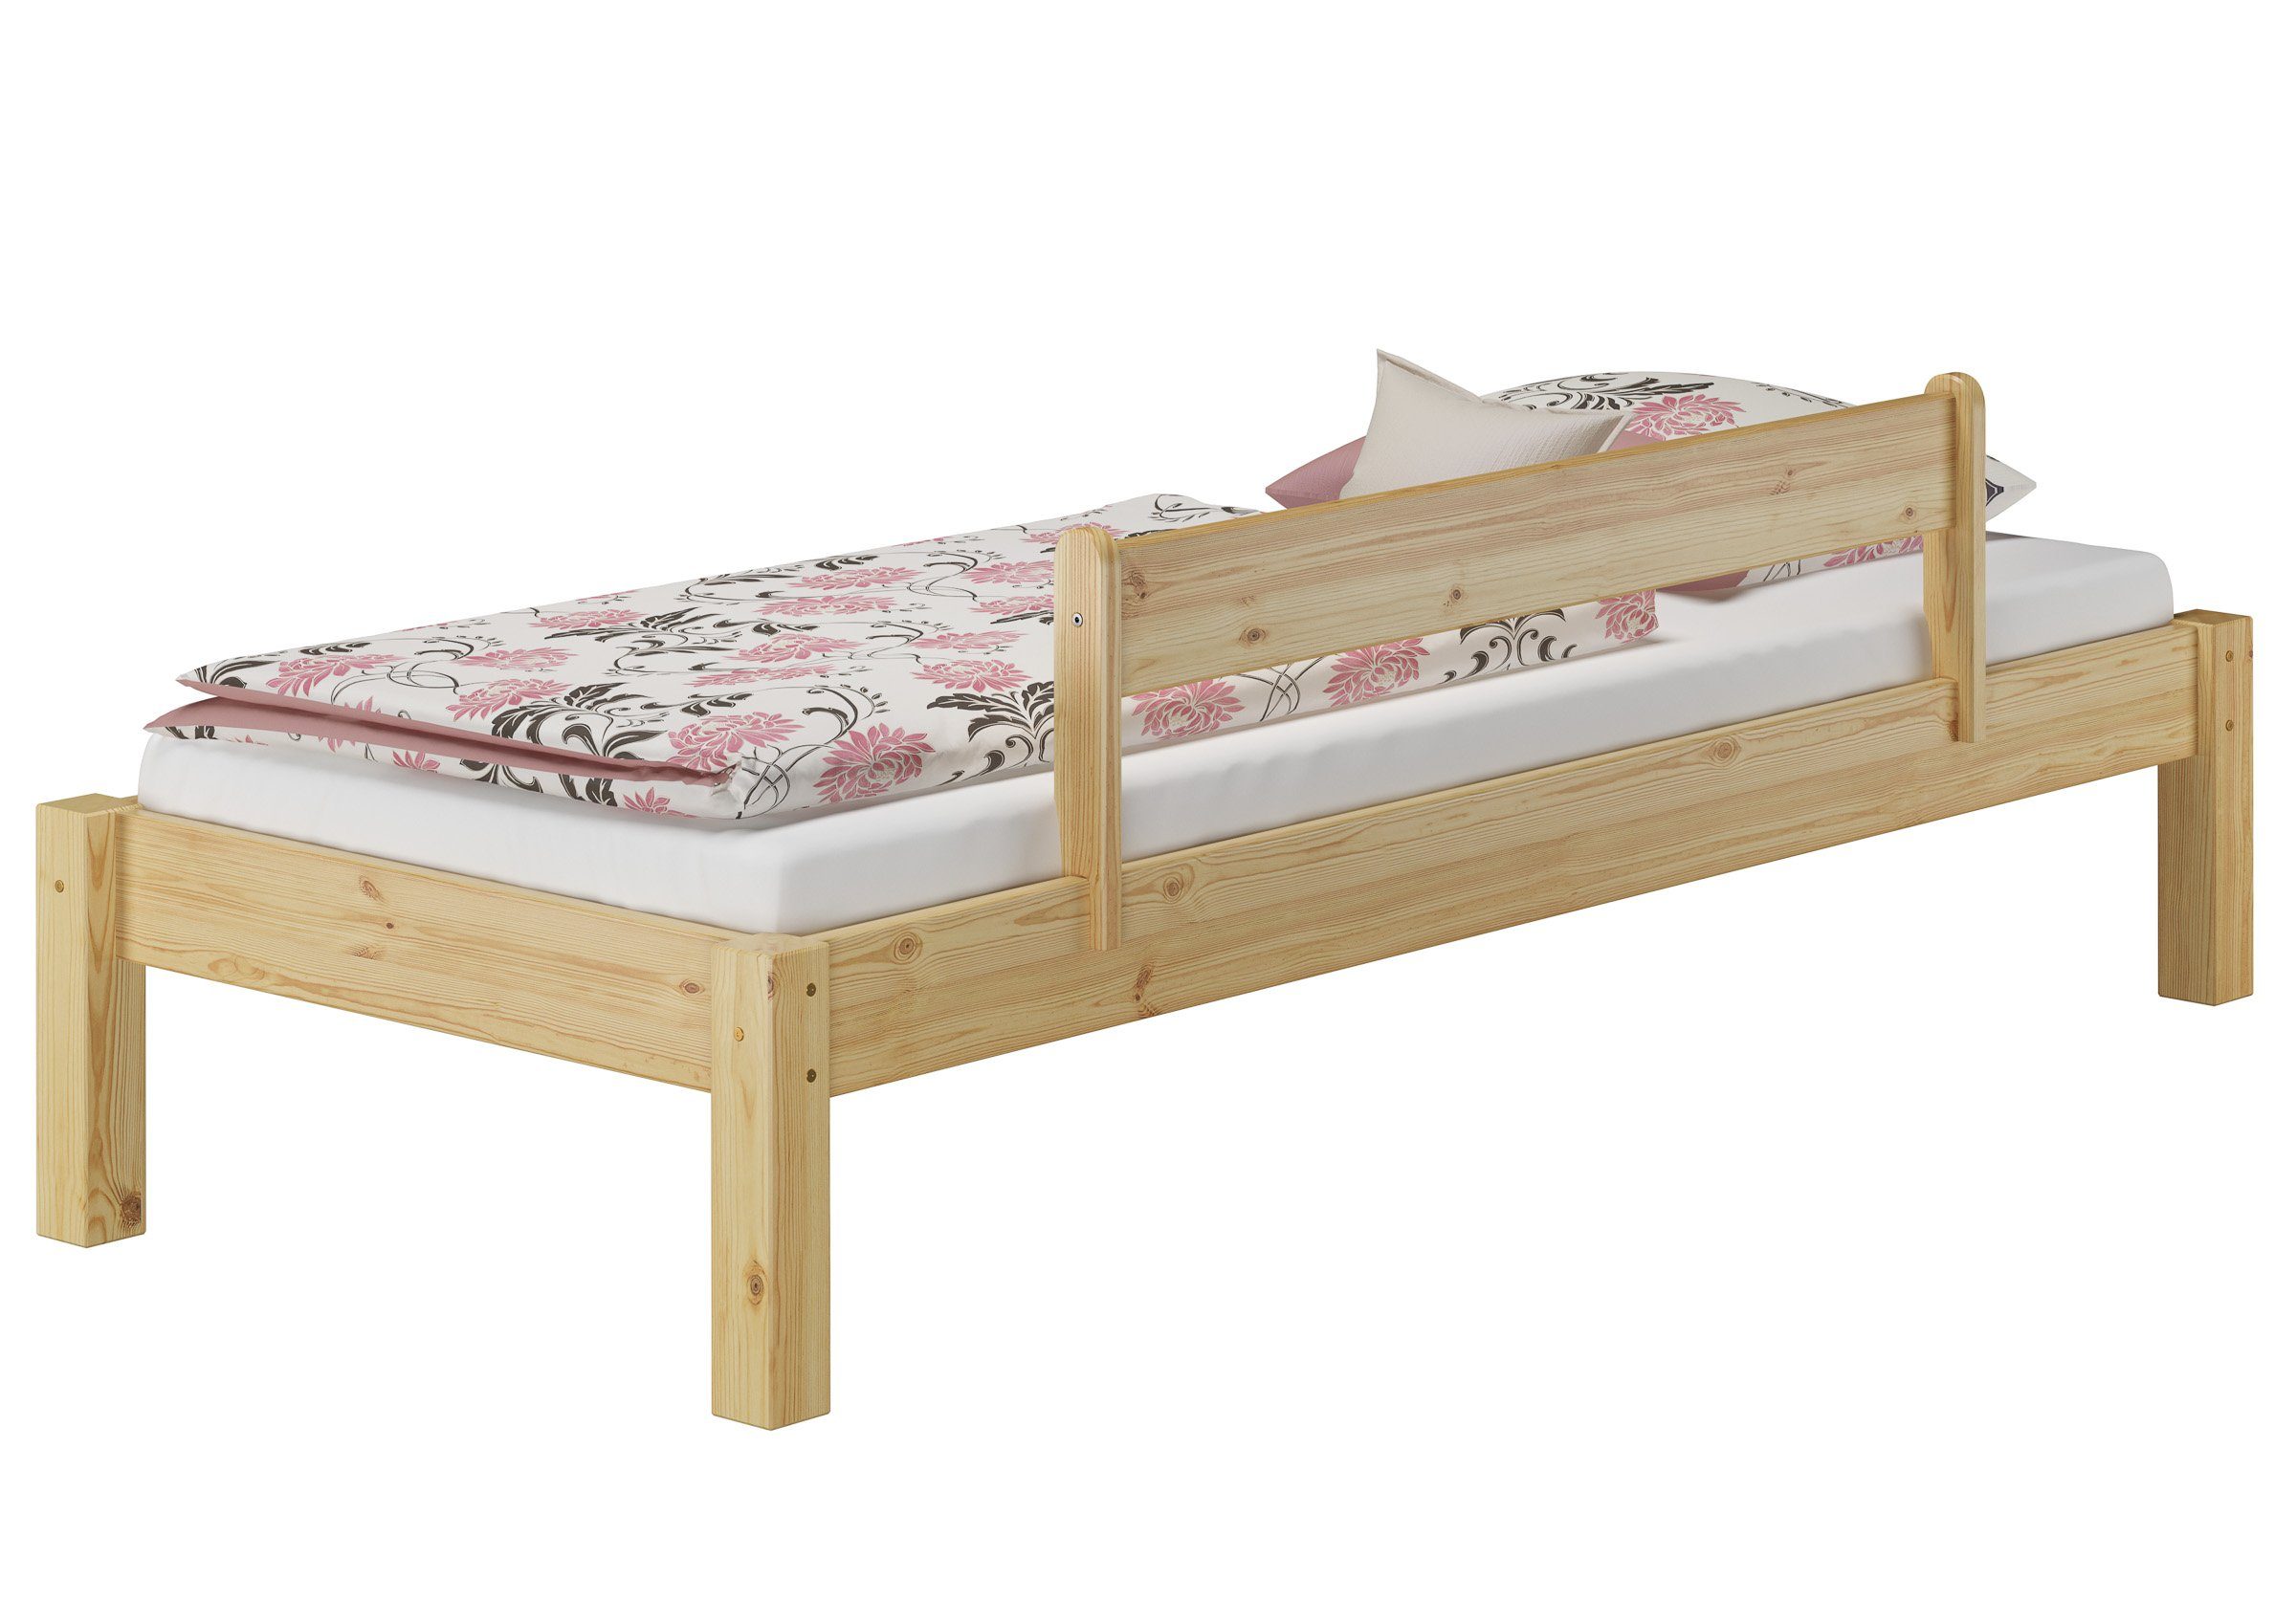 80x200 Kiefer Holzbett mit ERST-HOLZ Rost Kieferfarblos ohne und Bett lackiert Kopfteil Matratze,